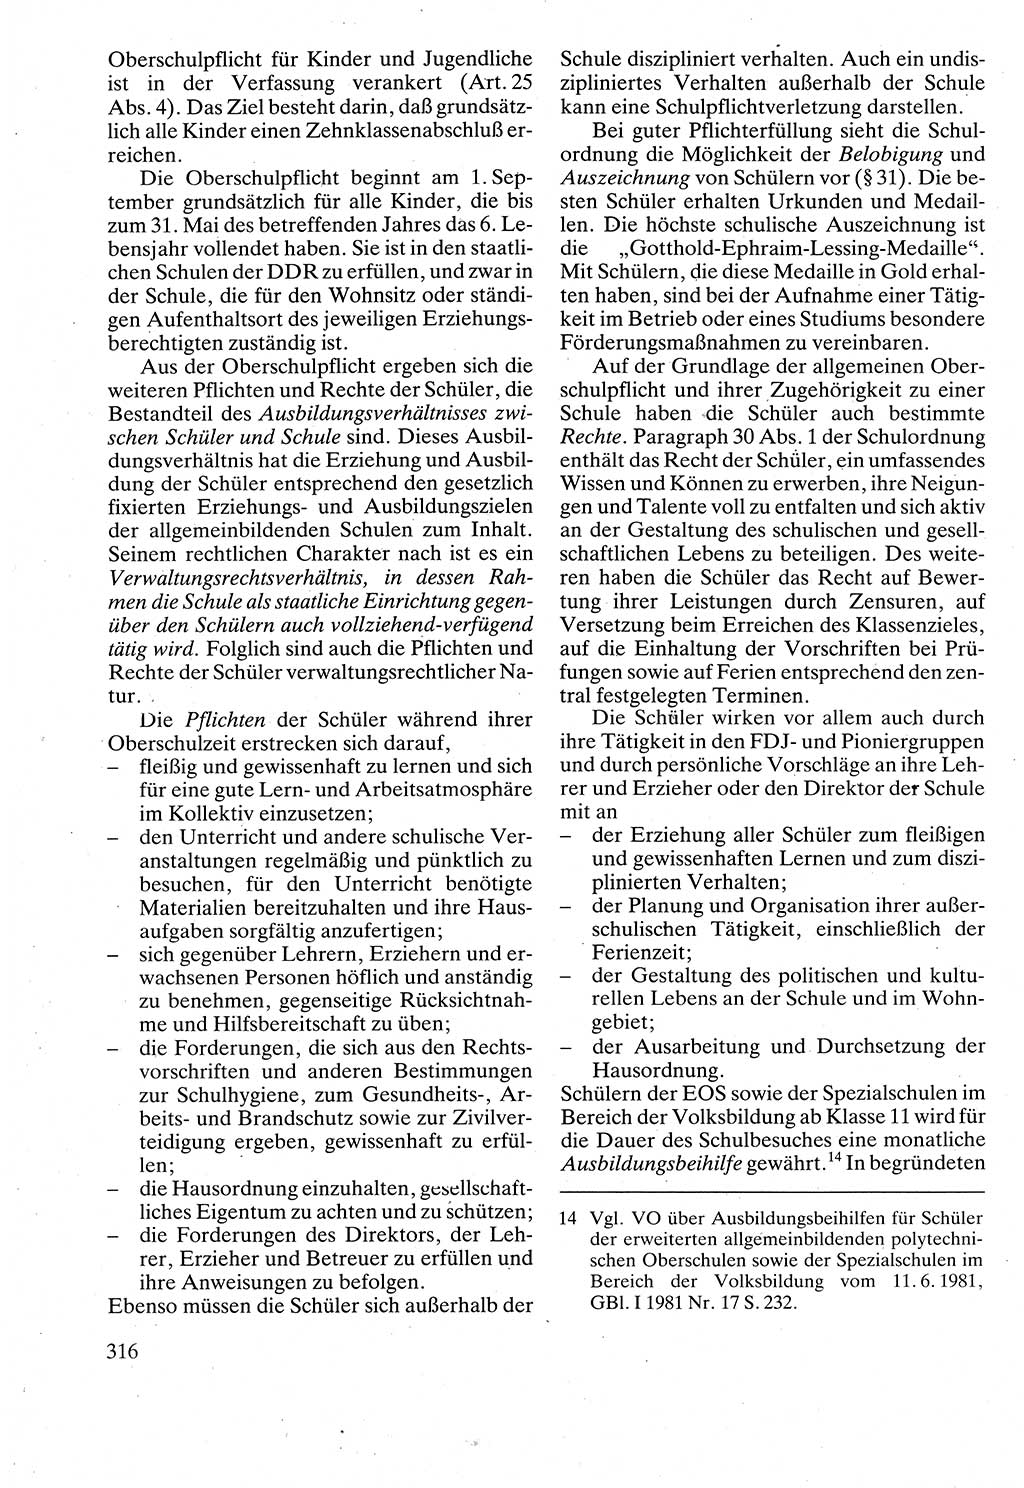 Verwaltungsrecht [Deutsche Demokratische Republik (DDR)], Lehrbuch 1988, Seite 316 (Verw.-R. DDR Lb. 1988, S. 316)